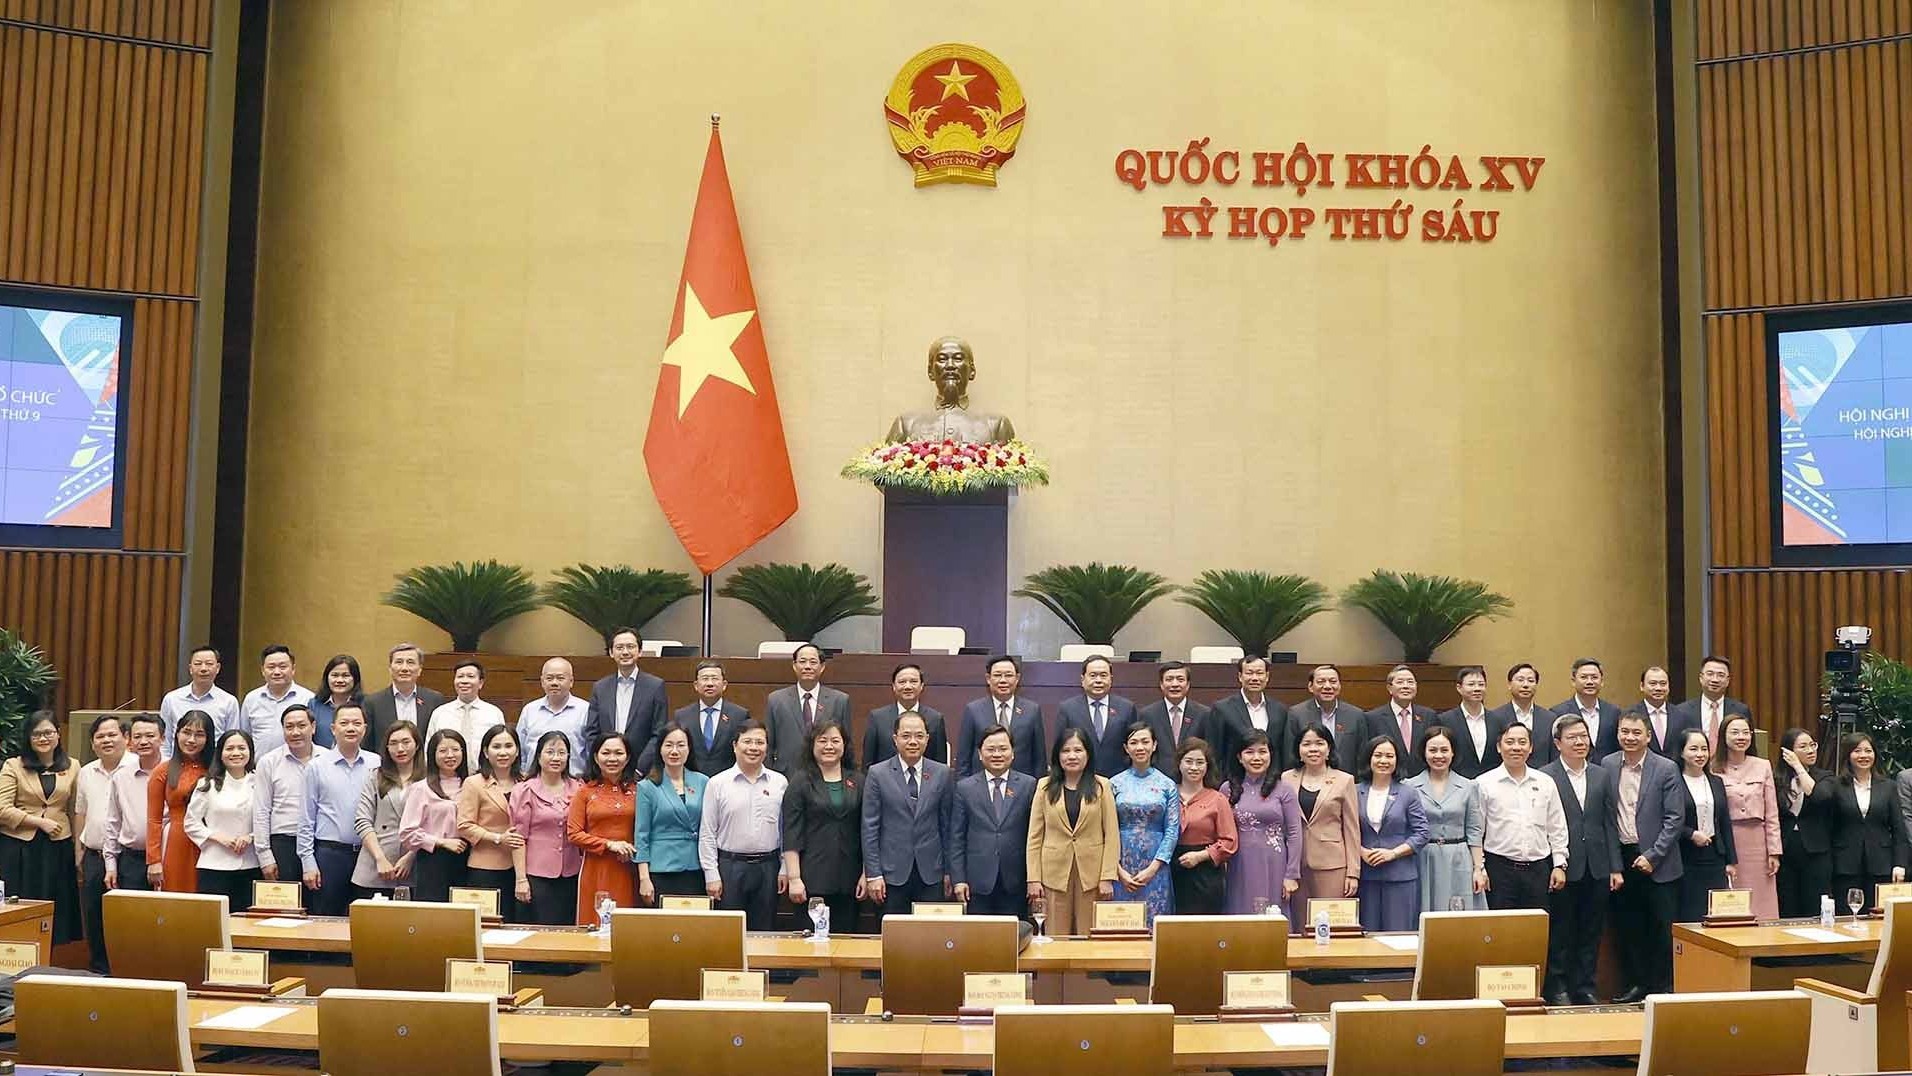 Hội nghị nghị sĩ trẻ toàn cầu lần thứ 9 đã đạt mục tiêu đề ra, góp phần nâng cao uy tín của Quốc hội Việt Nam